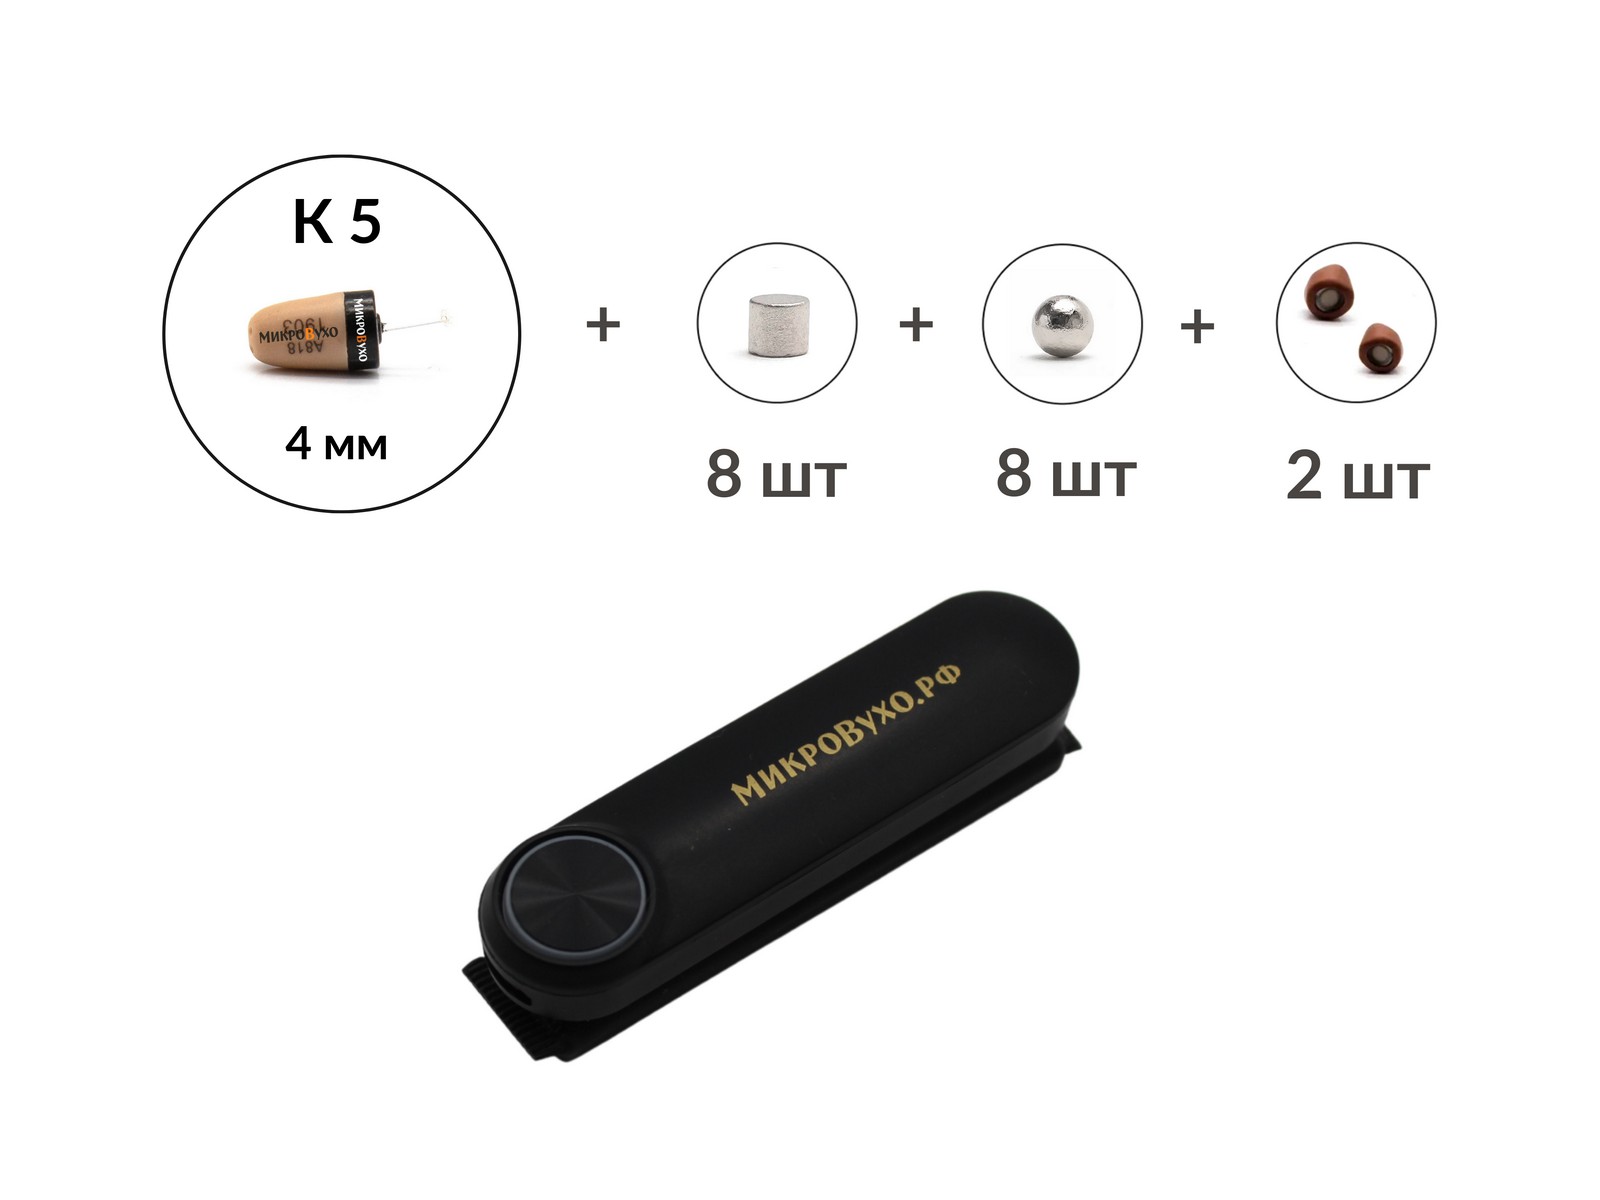 Универсальная гарнитура Bluetooth Box Standard Plus с капсулой К5 4 мм и магнитами 2 мм - изображение 4